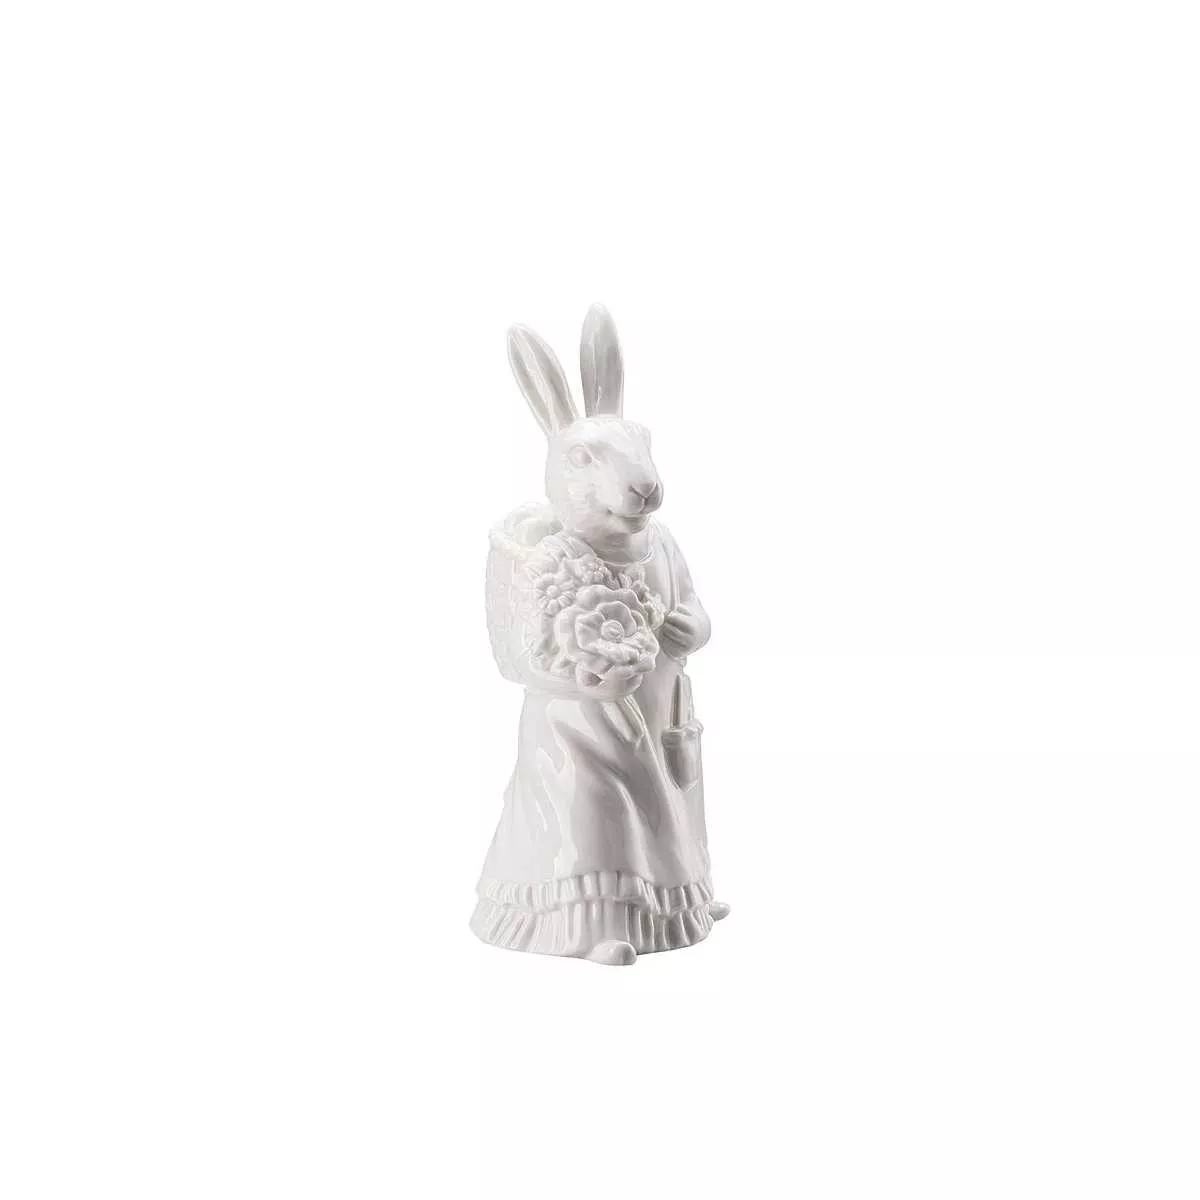 Статуэтка пасхальная «Леди кролик с корзиной» белая Hutschenreuther Hasenfiguren Weiss, высота 13,5 см (02350-800001-88840) - Фото nav 3